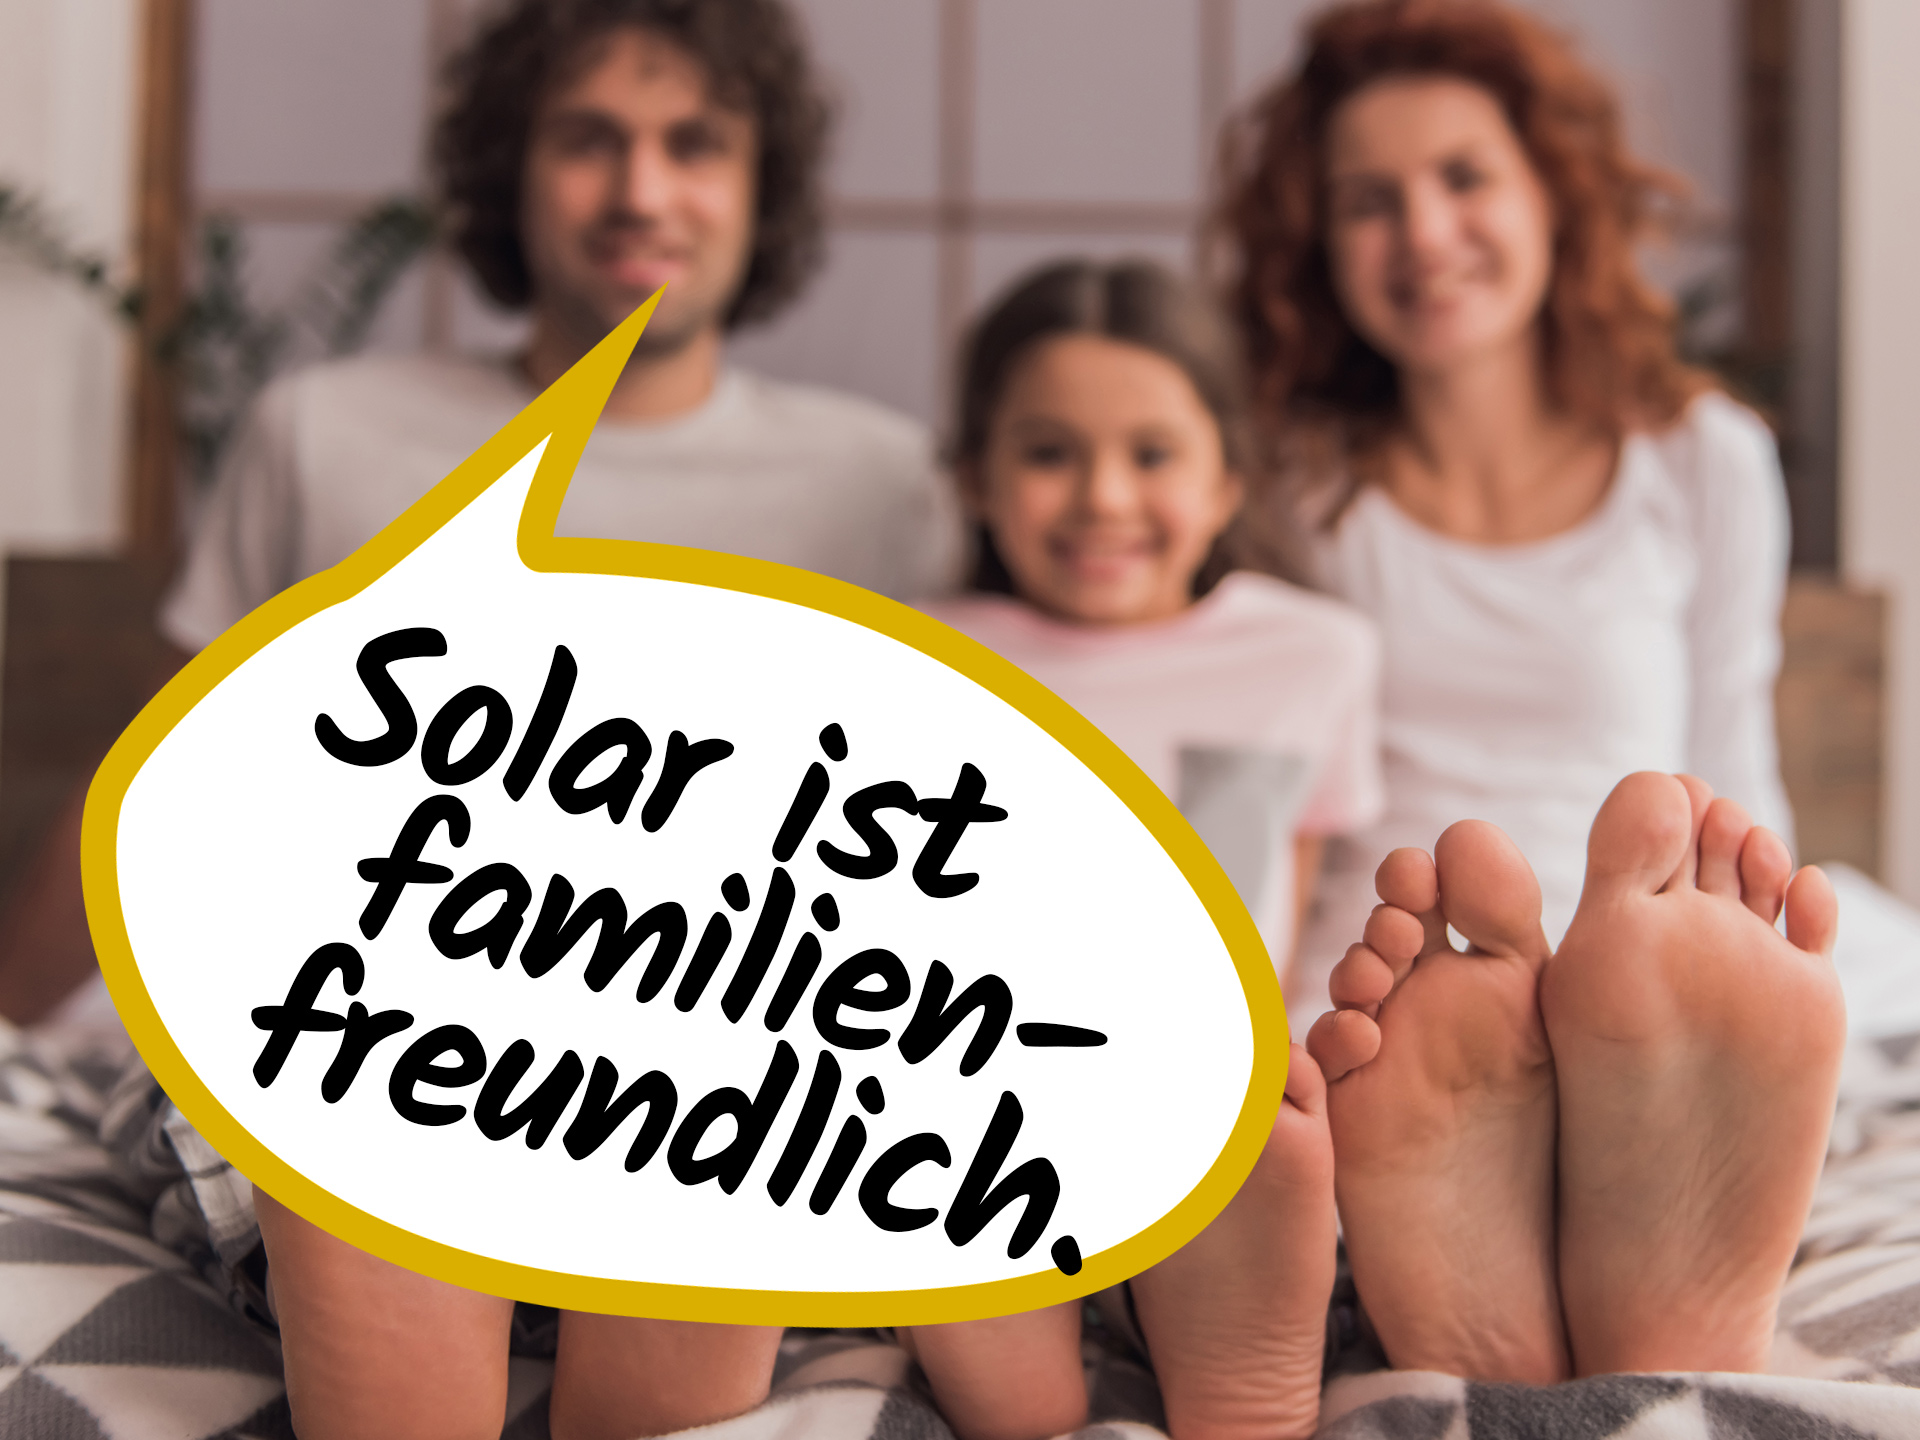 Solar ist freundlich - für Familien